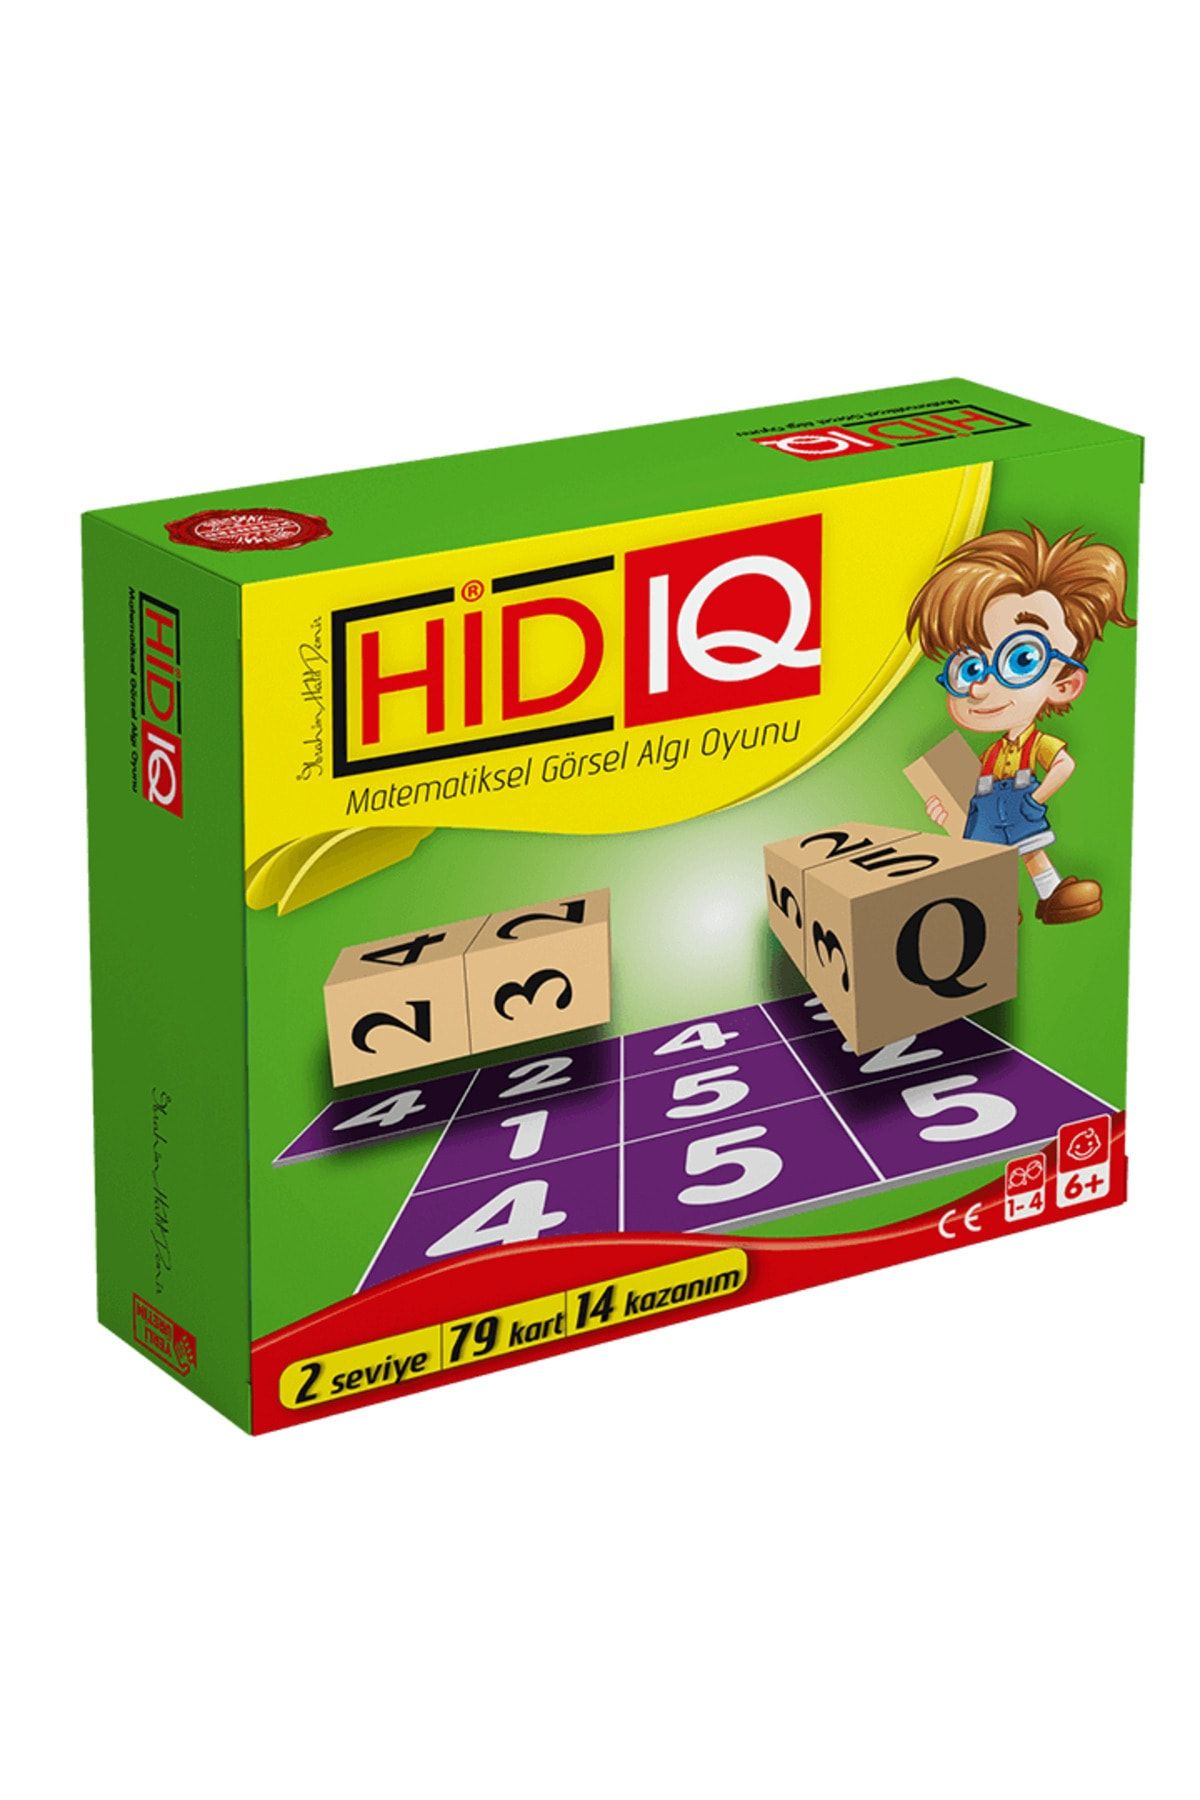 Toli Games Hid Iq Matematiksel Görsel Algı Ve Zeka Oyunu